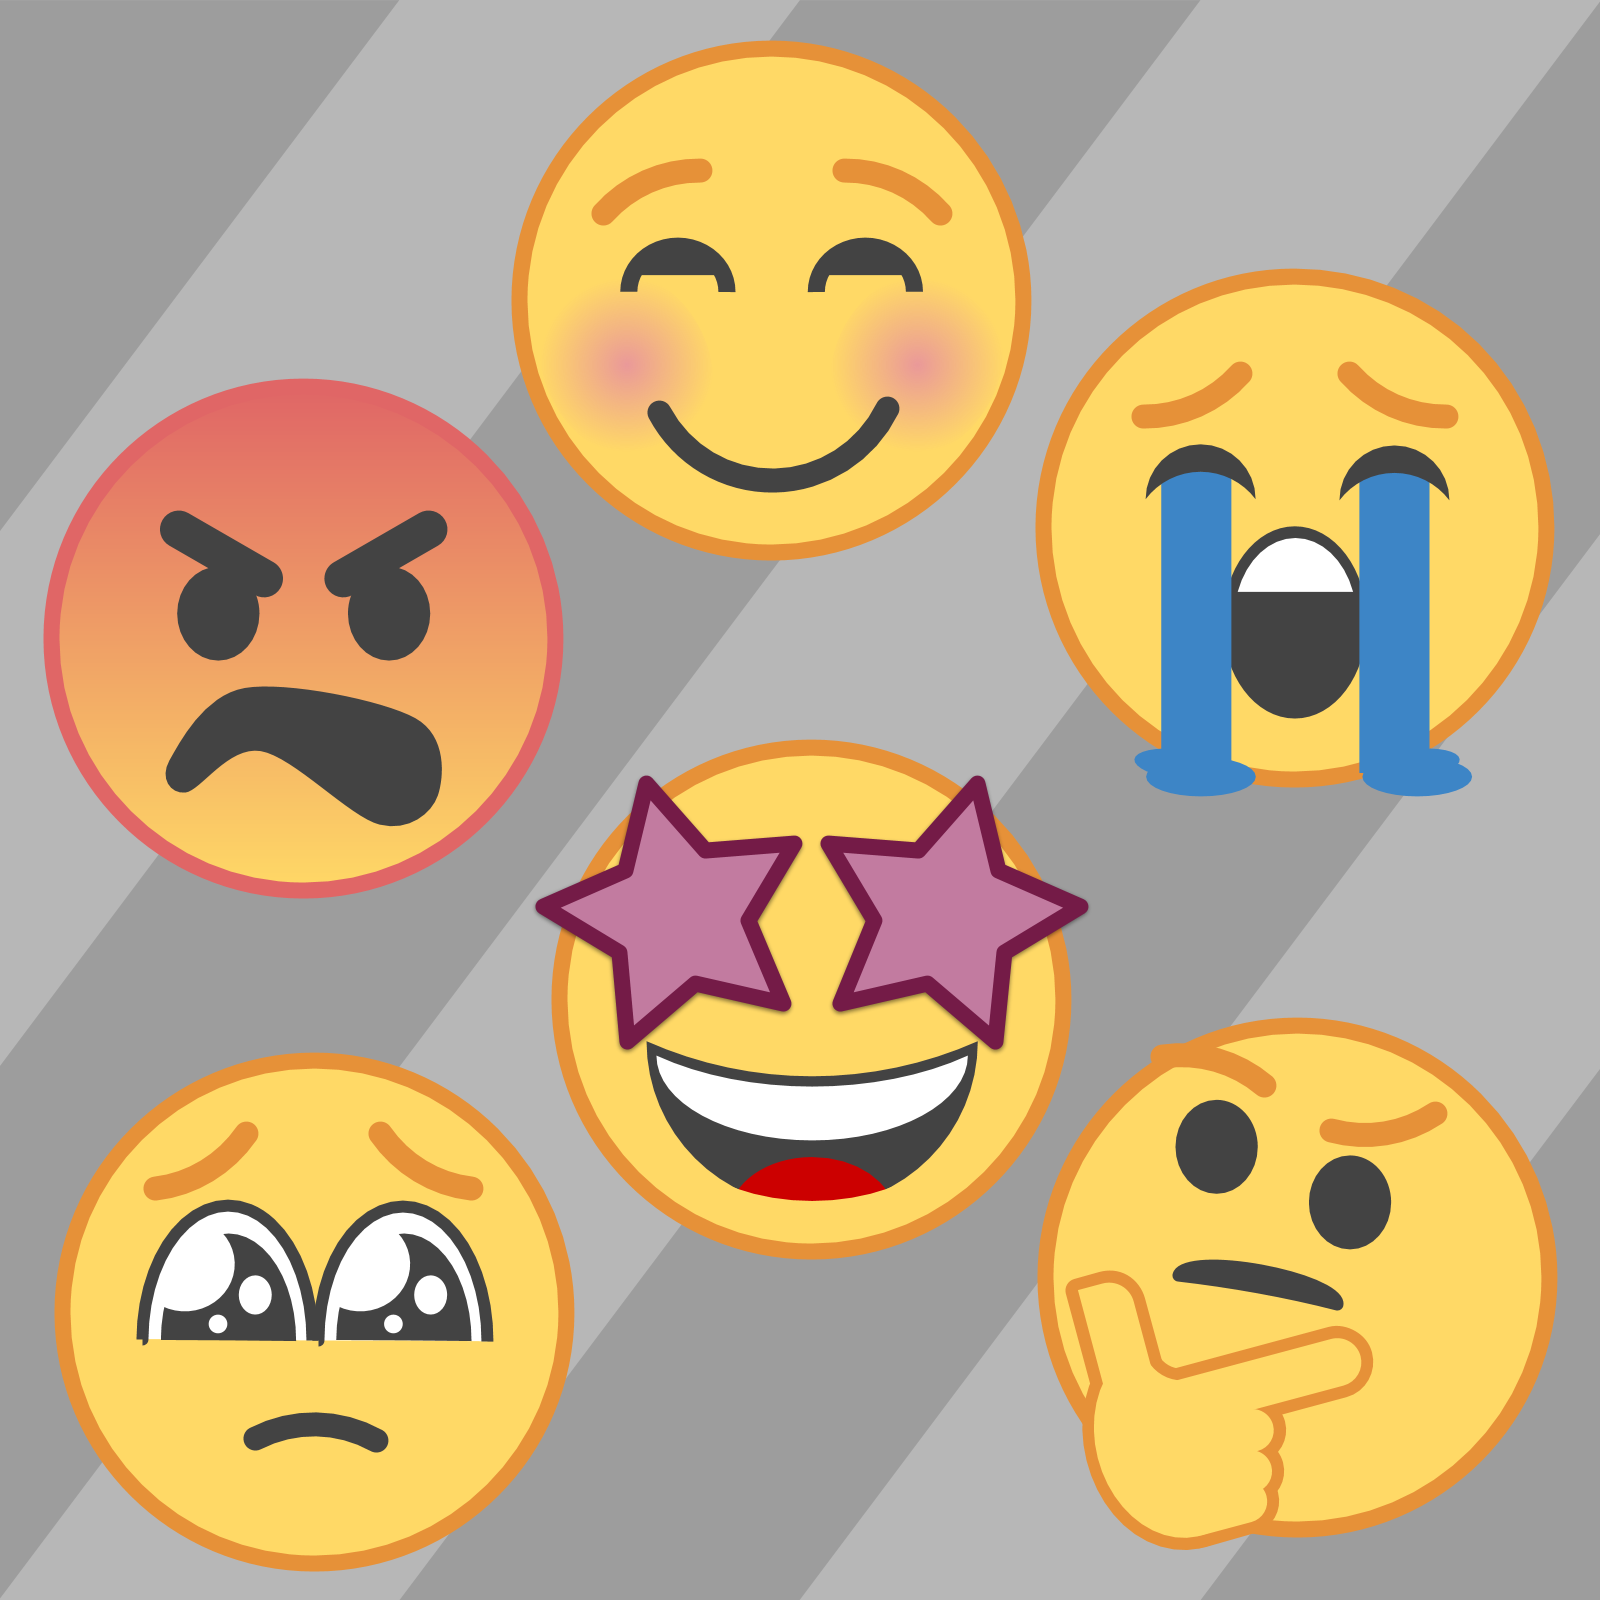 Labeled Emojis